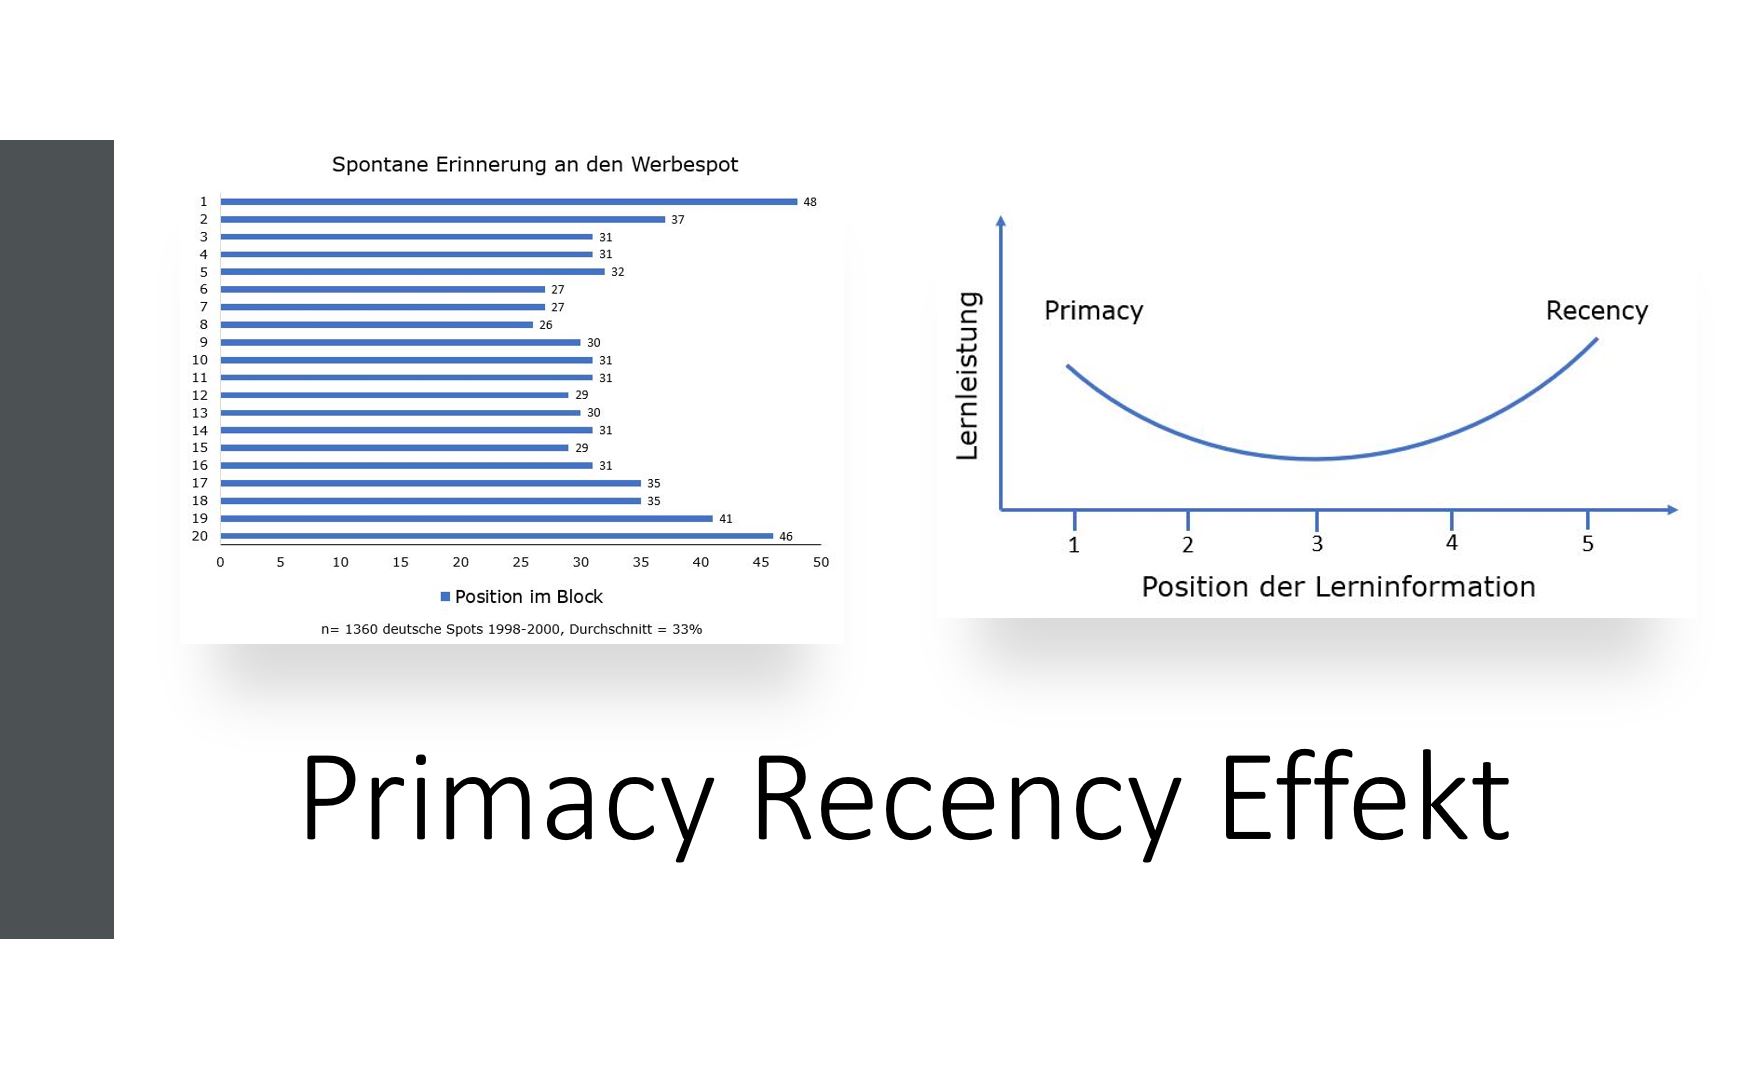 Primacy Recency Effekt